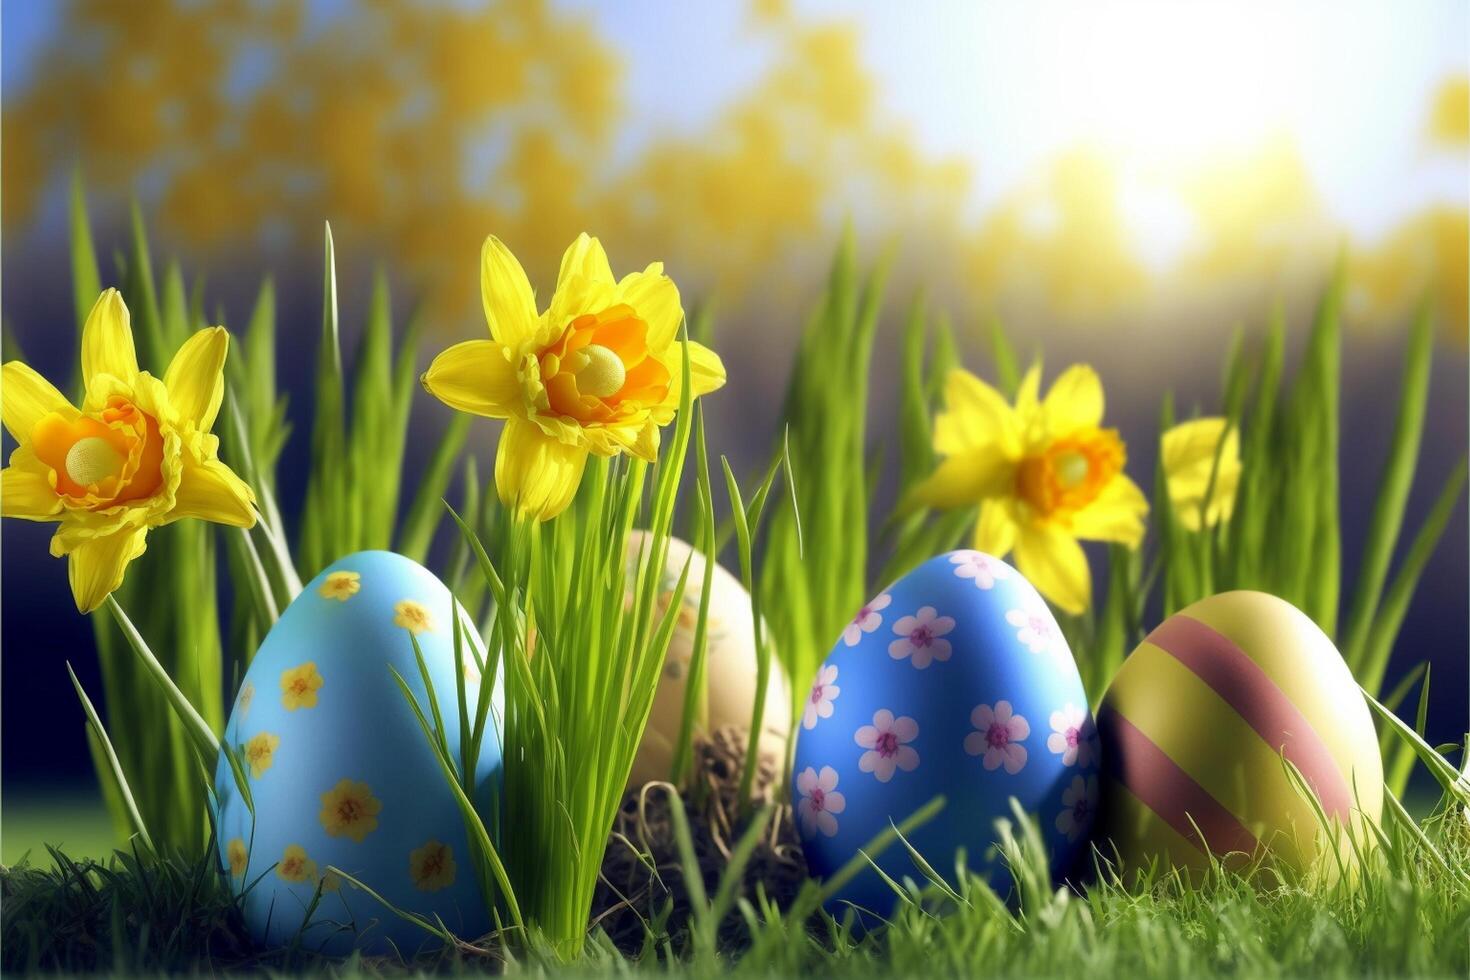 glücklich Ostern Eier Ostern Hase 4k hd ai generiert Bilder zum Hintergrund und Ostern wünscht sich foto